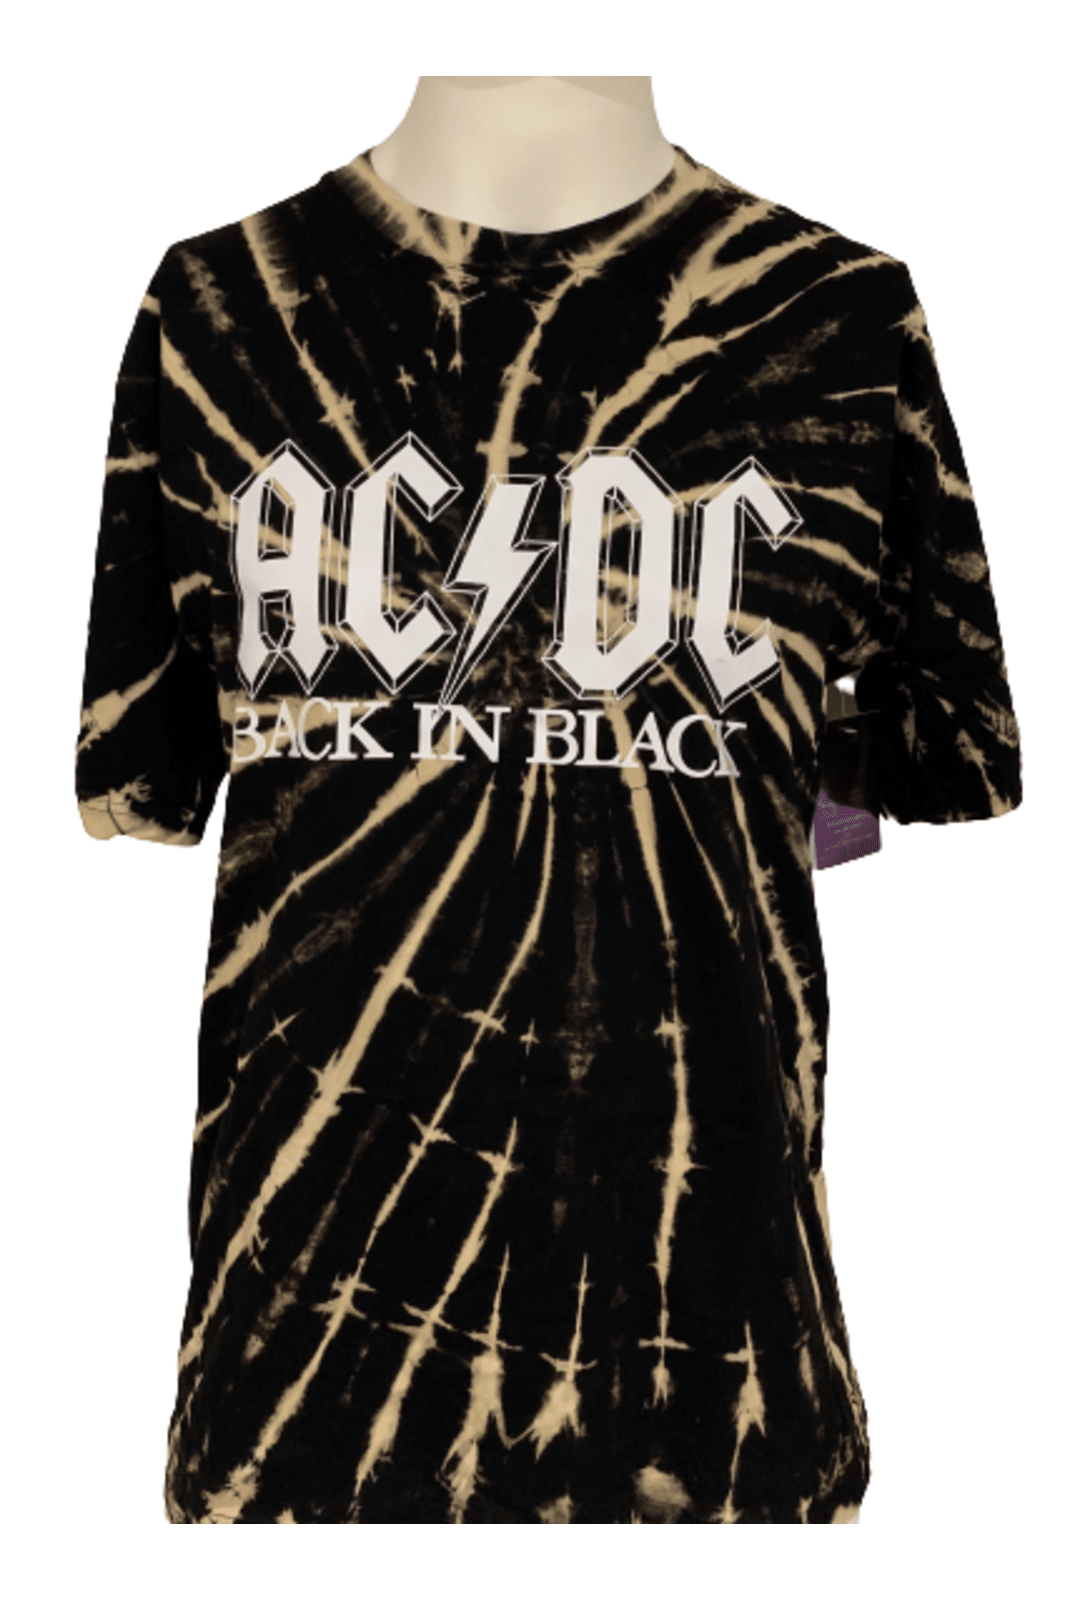 AC/DC Tie Dye Shirts